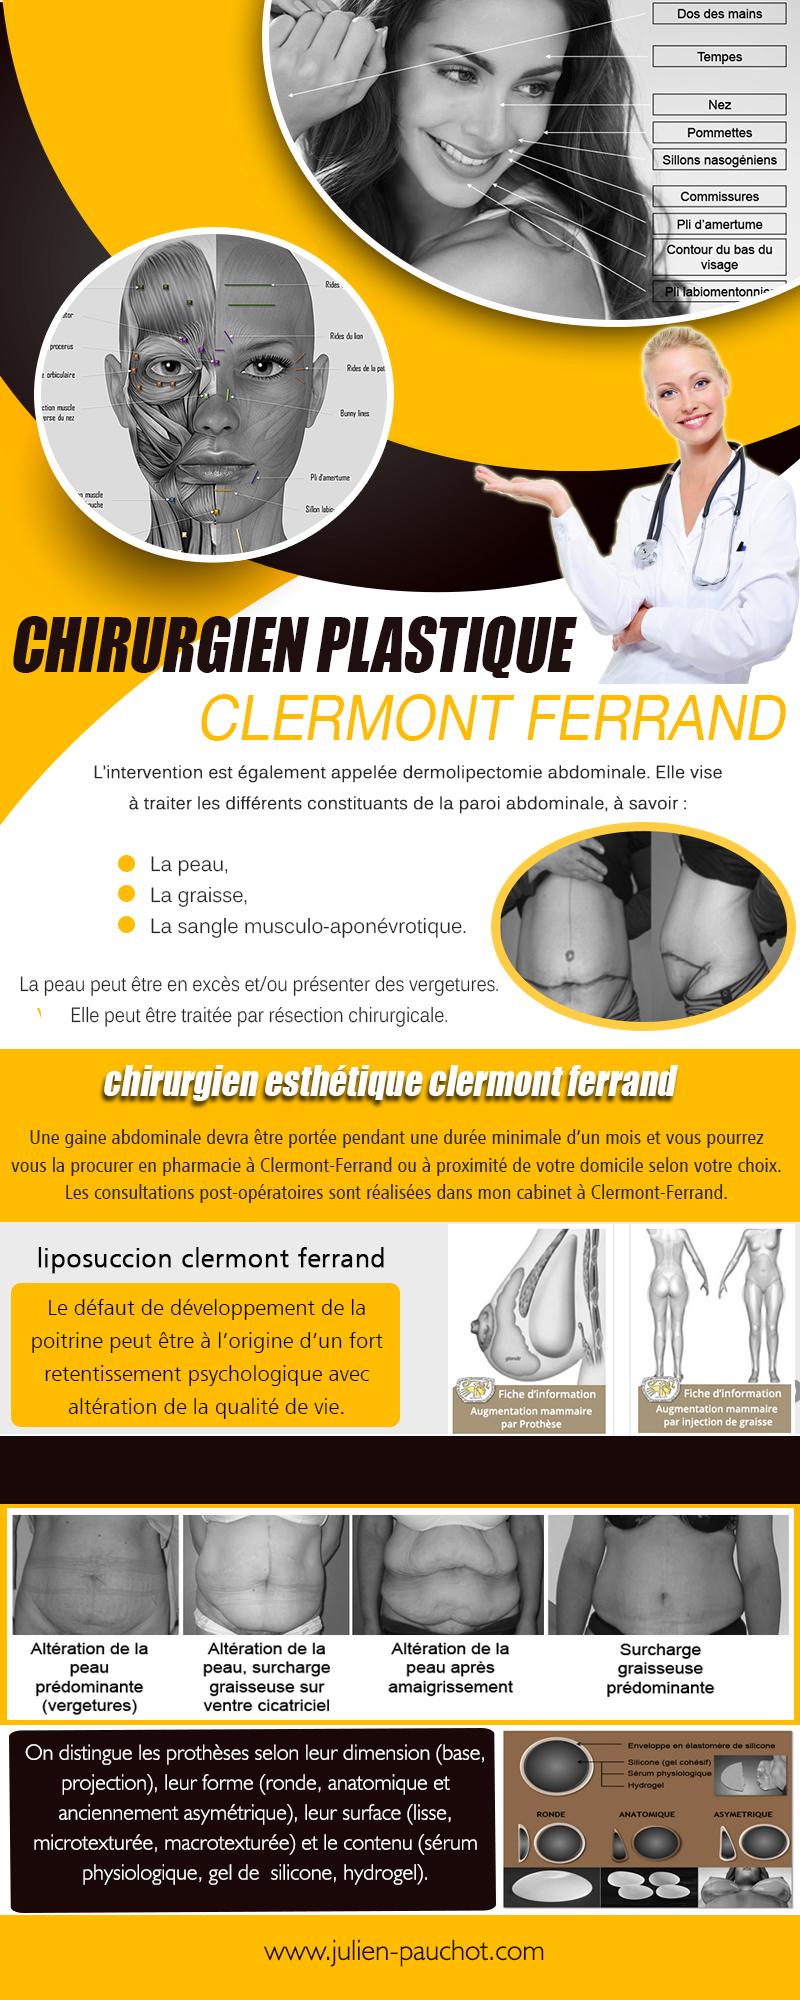 Chirurgien Plastique Clermont Ferrand (2) | http://www.julien-pauchot.com/